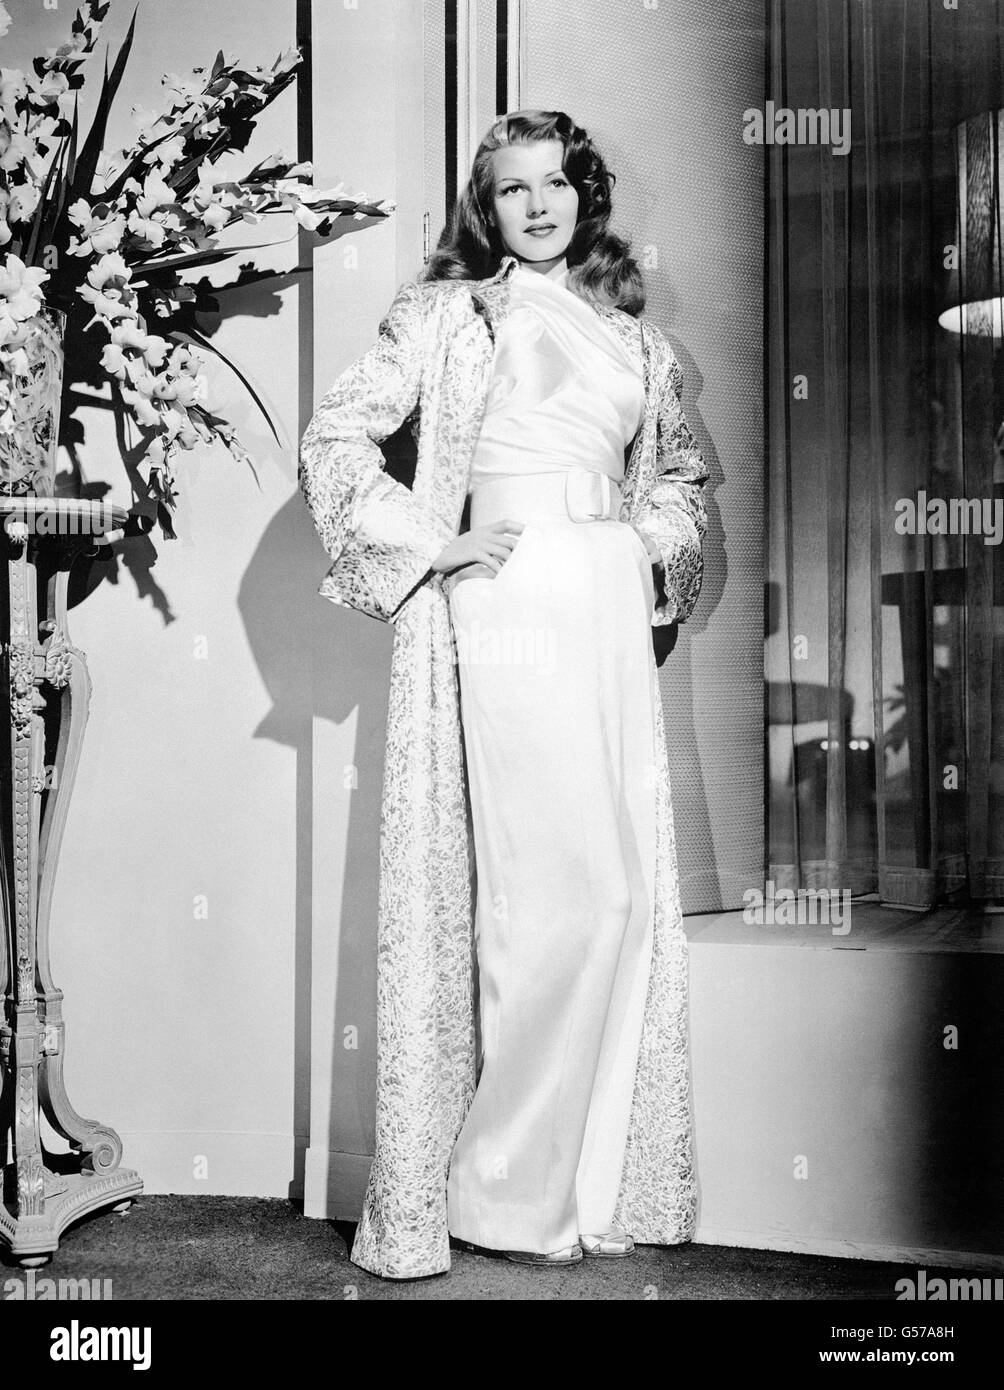 Intrattenimento - Rita Hayworth. Rita Hayworth, attrice cinematografica americana. Foto Stock